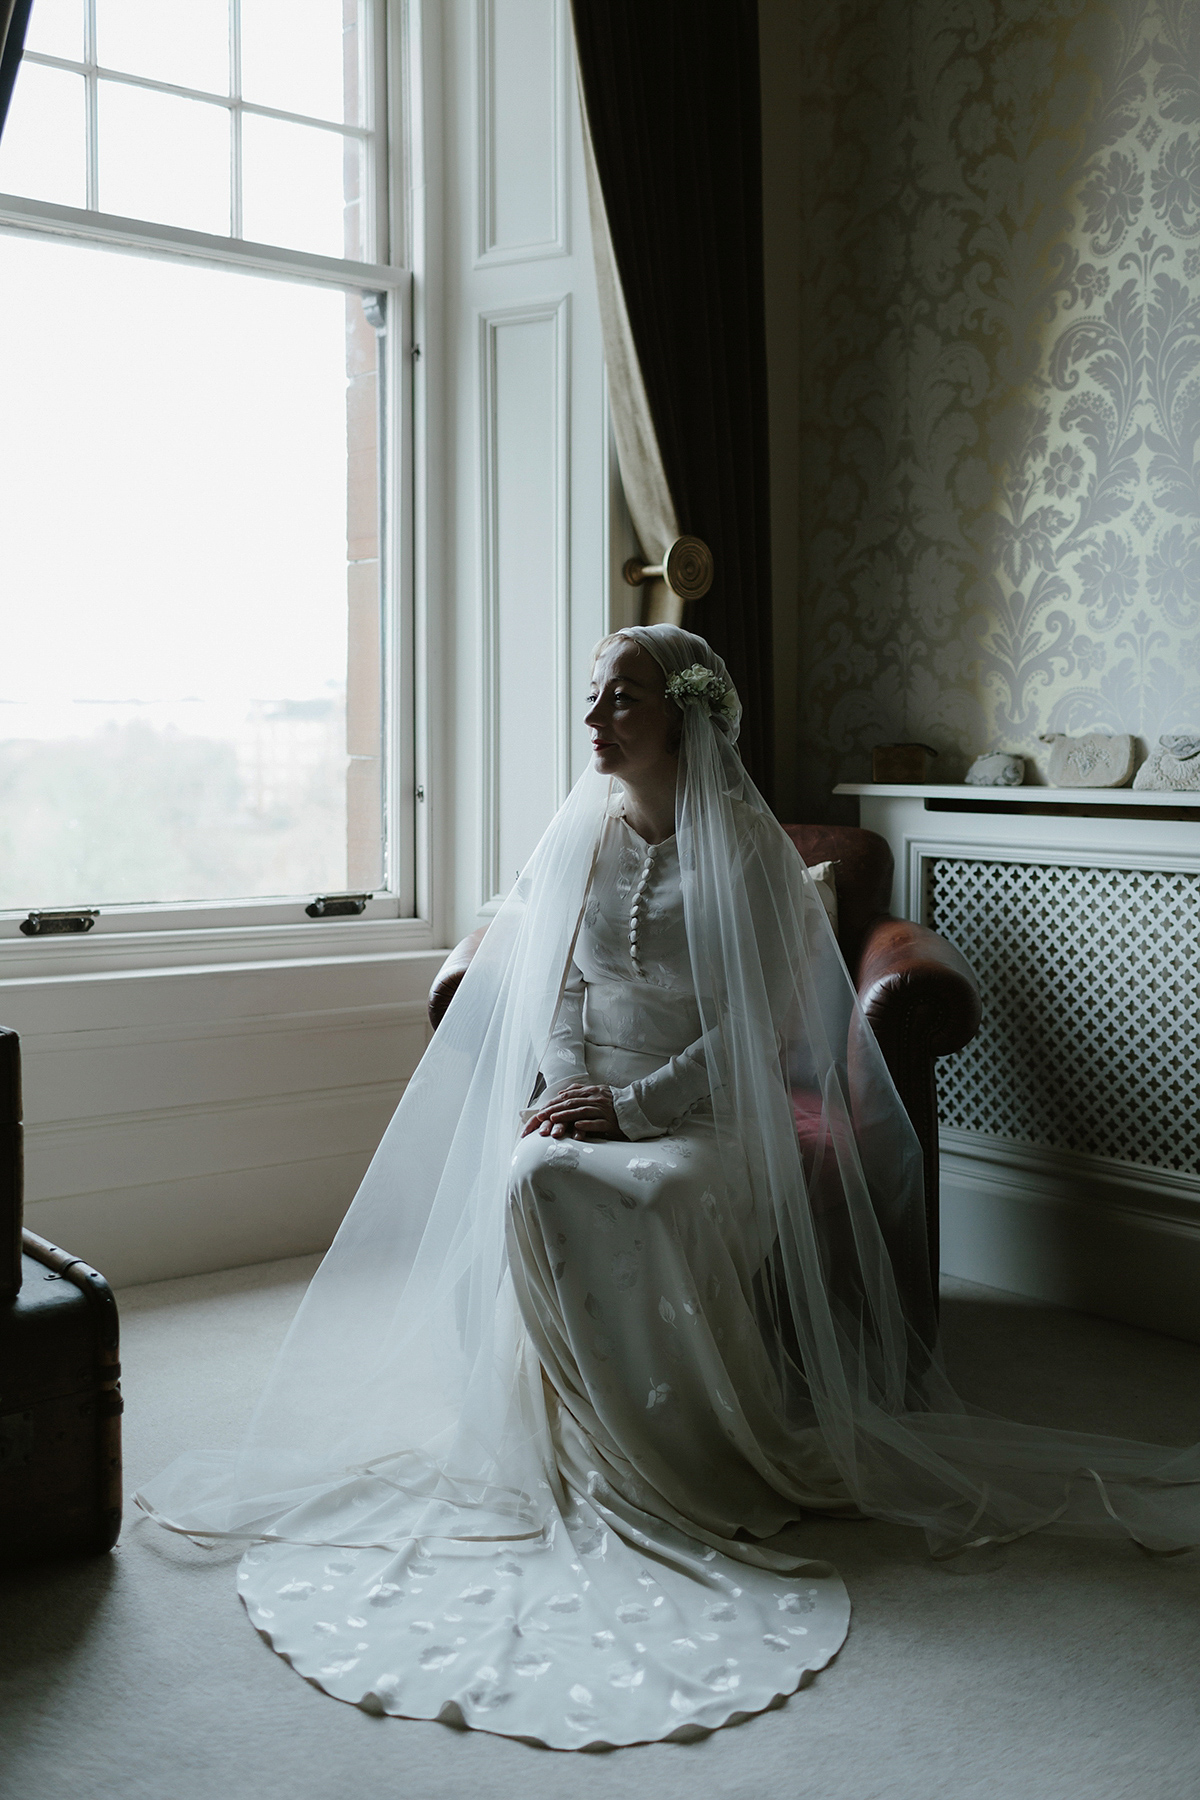 Vintage 1930s Long Veil with Crown — Miranda's Vintage Bridal